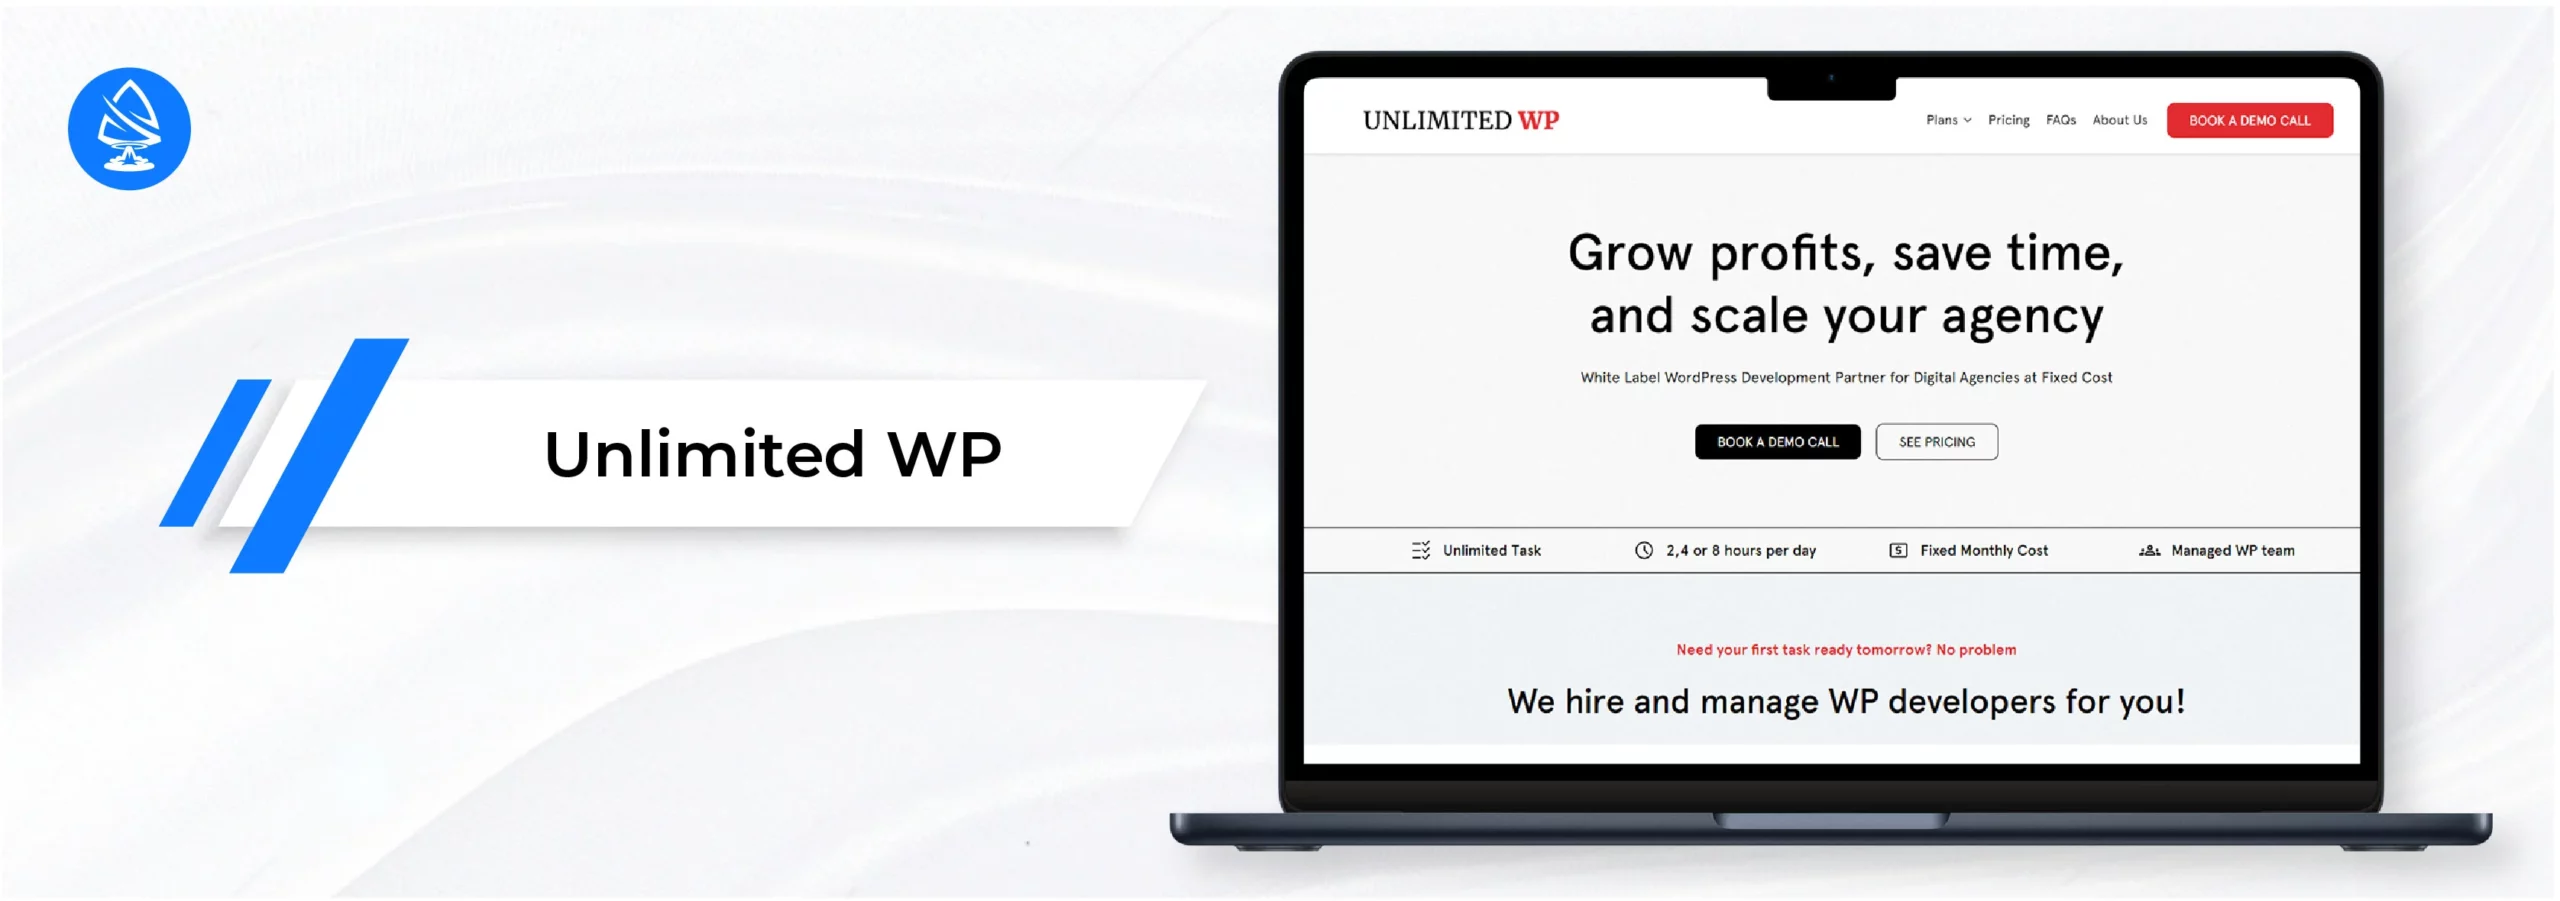 Unlimited WP - wordpress website design agencies